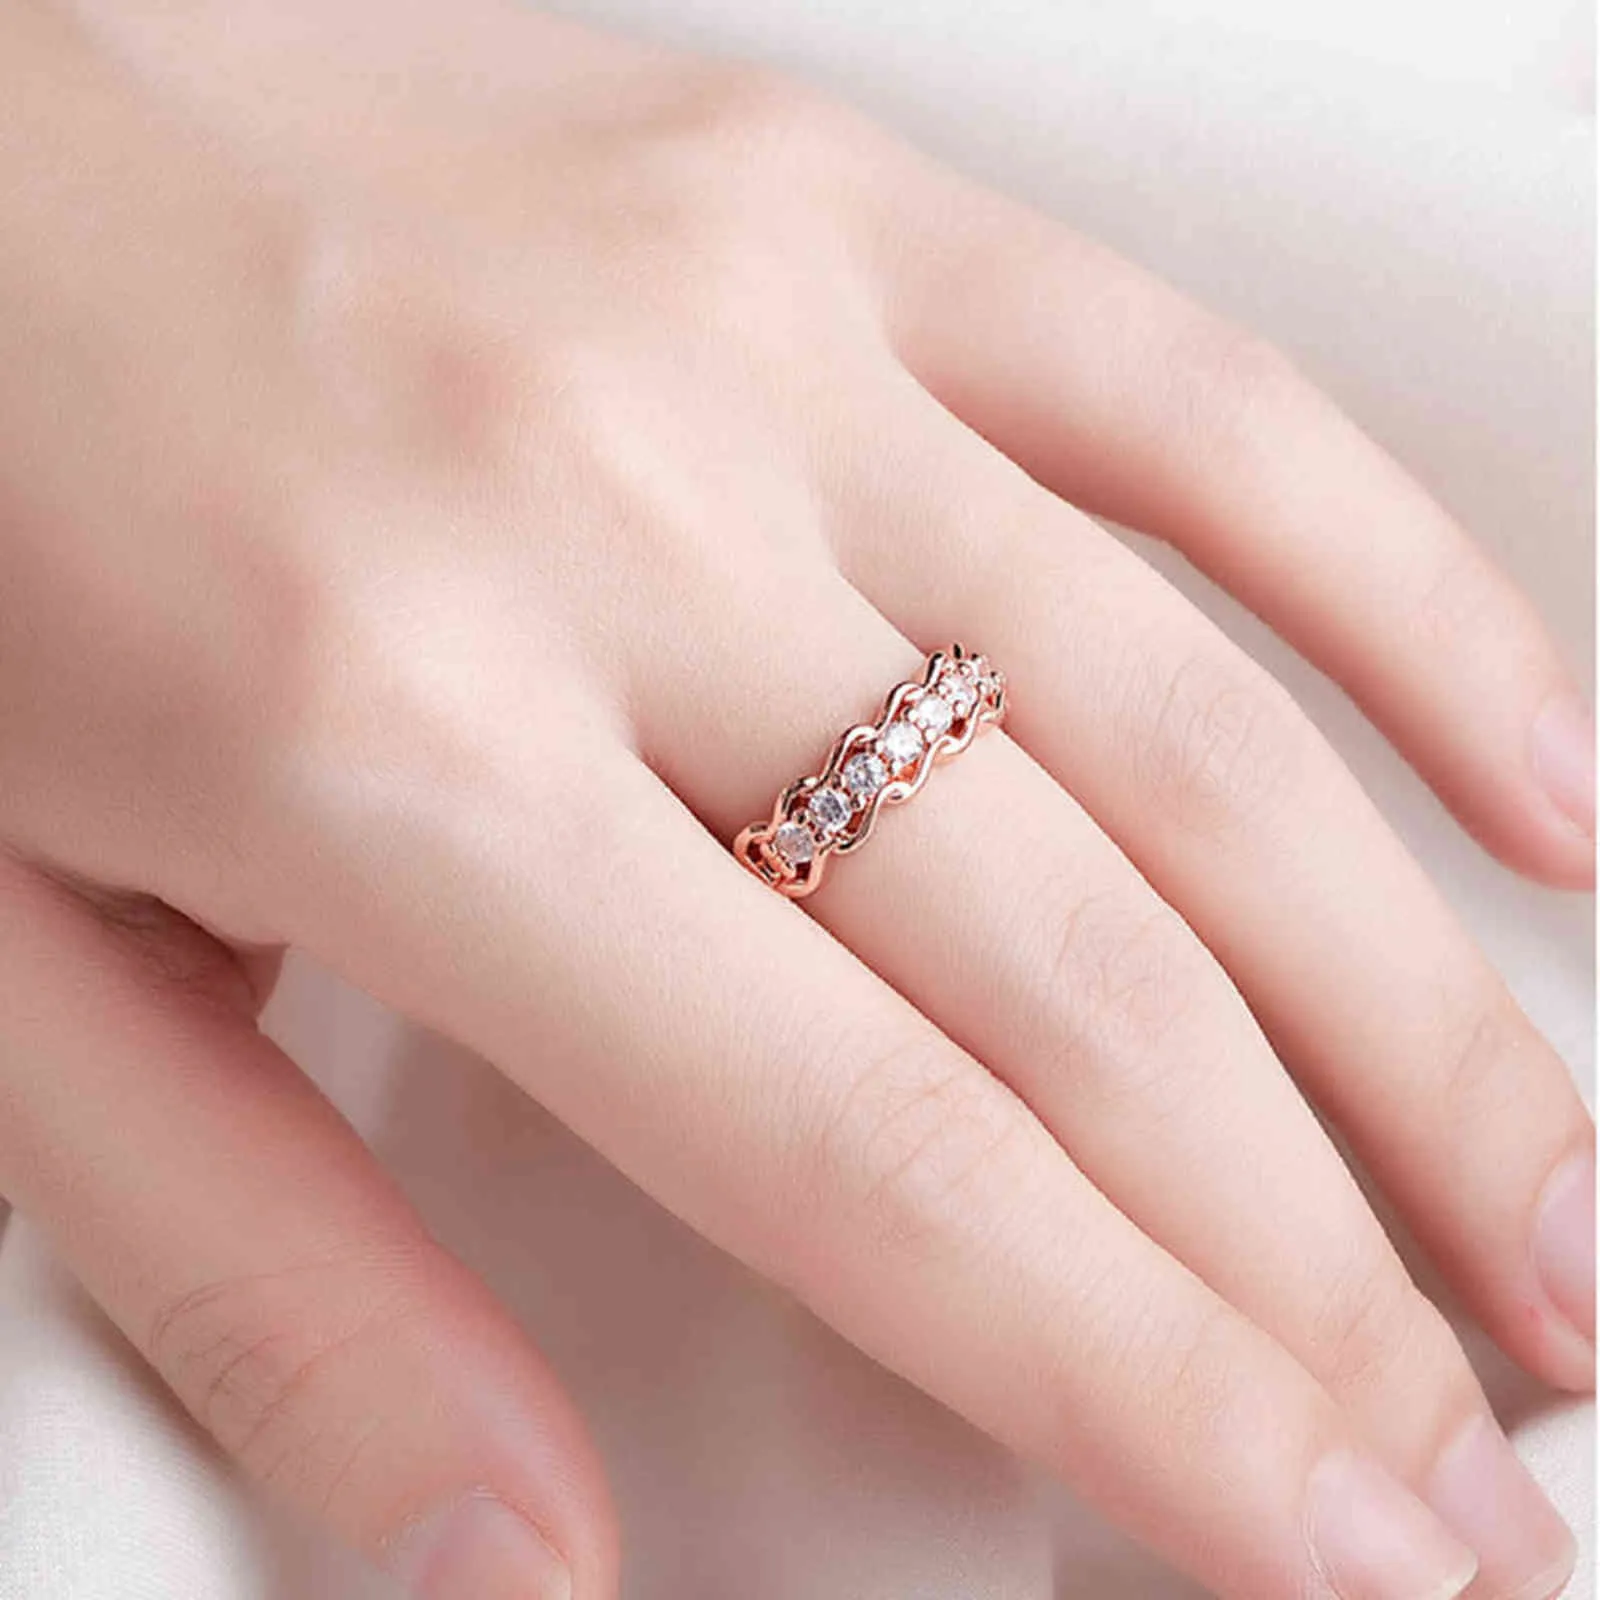 Moda modello a onde zircone Knuckl anello aperto regolabile Shang Chi anello donna gioielli intelligenti G1125